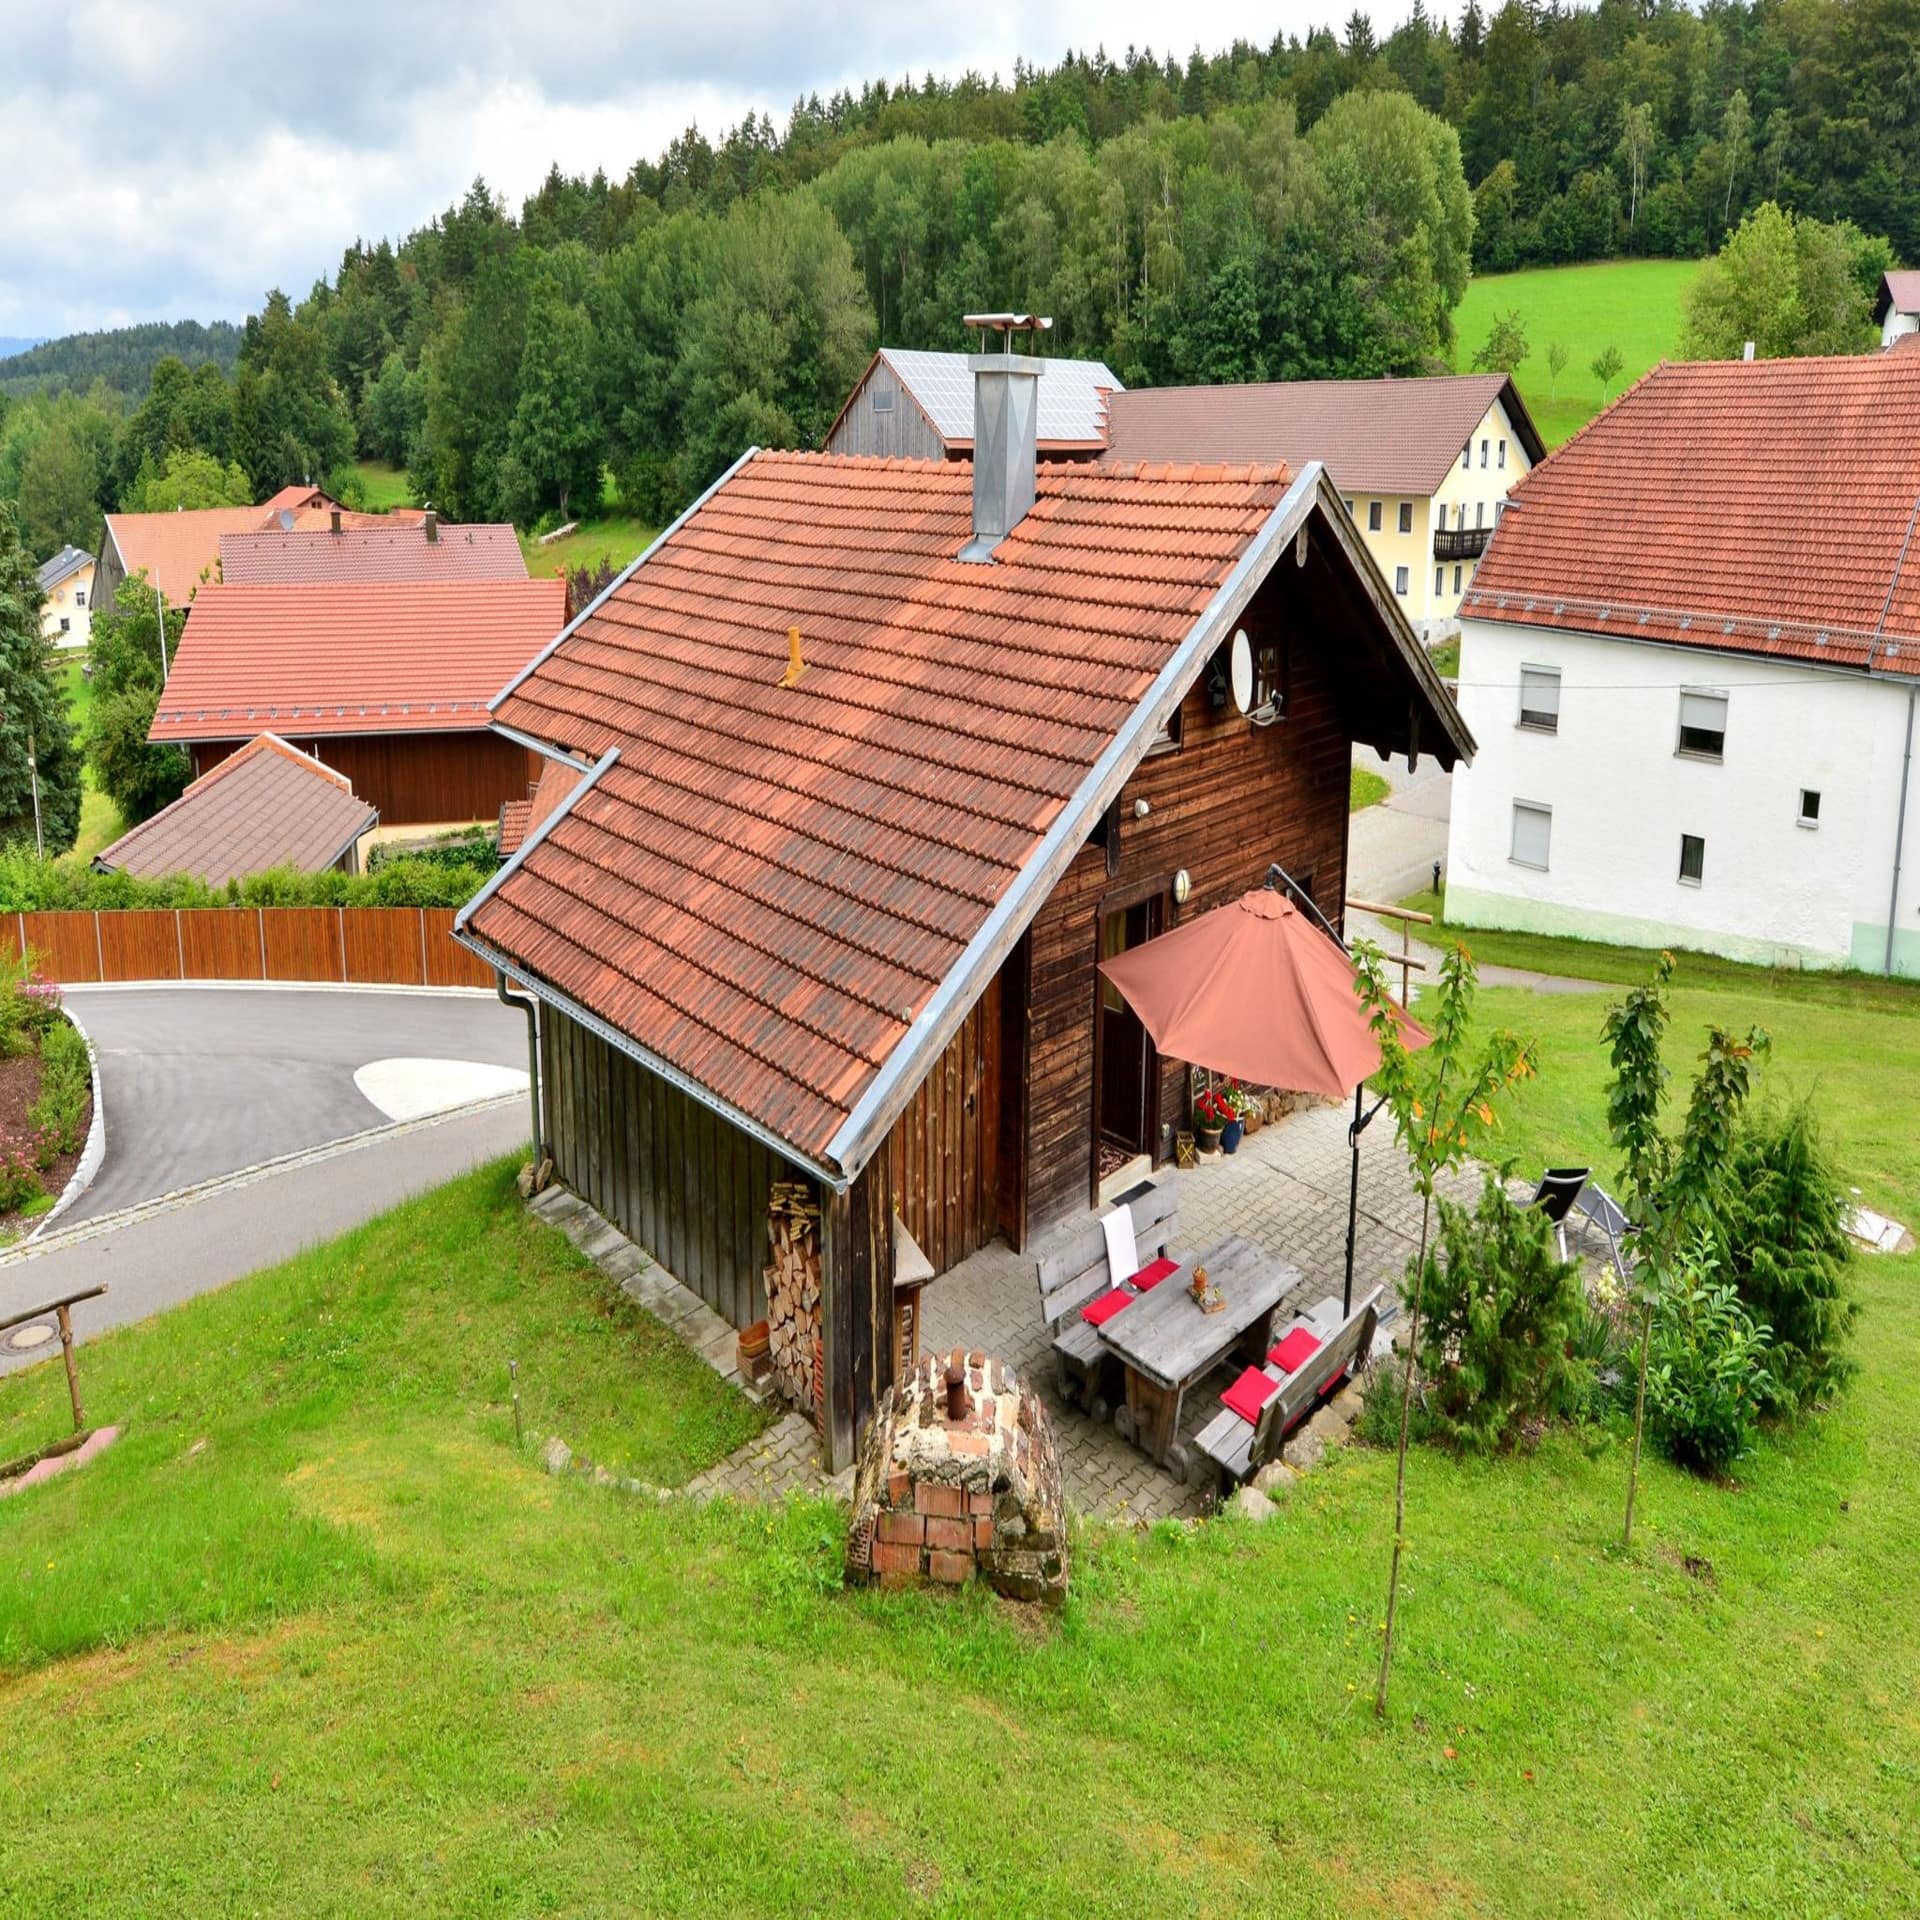 Holzhaus mit Terrasse in einem Dorf im Bayerischen Wald.